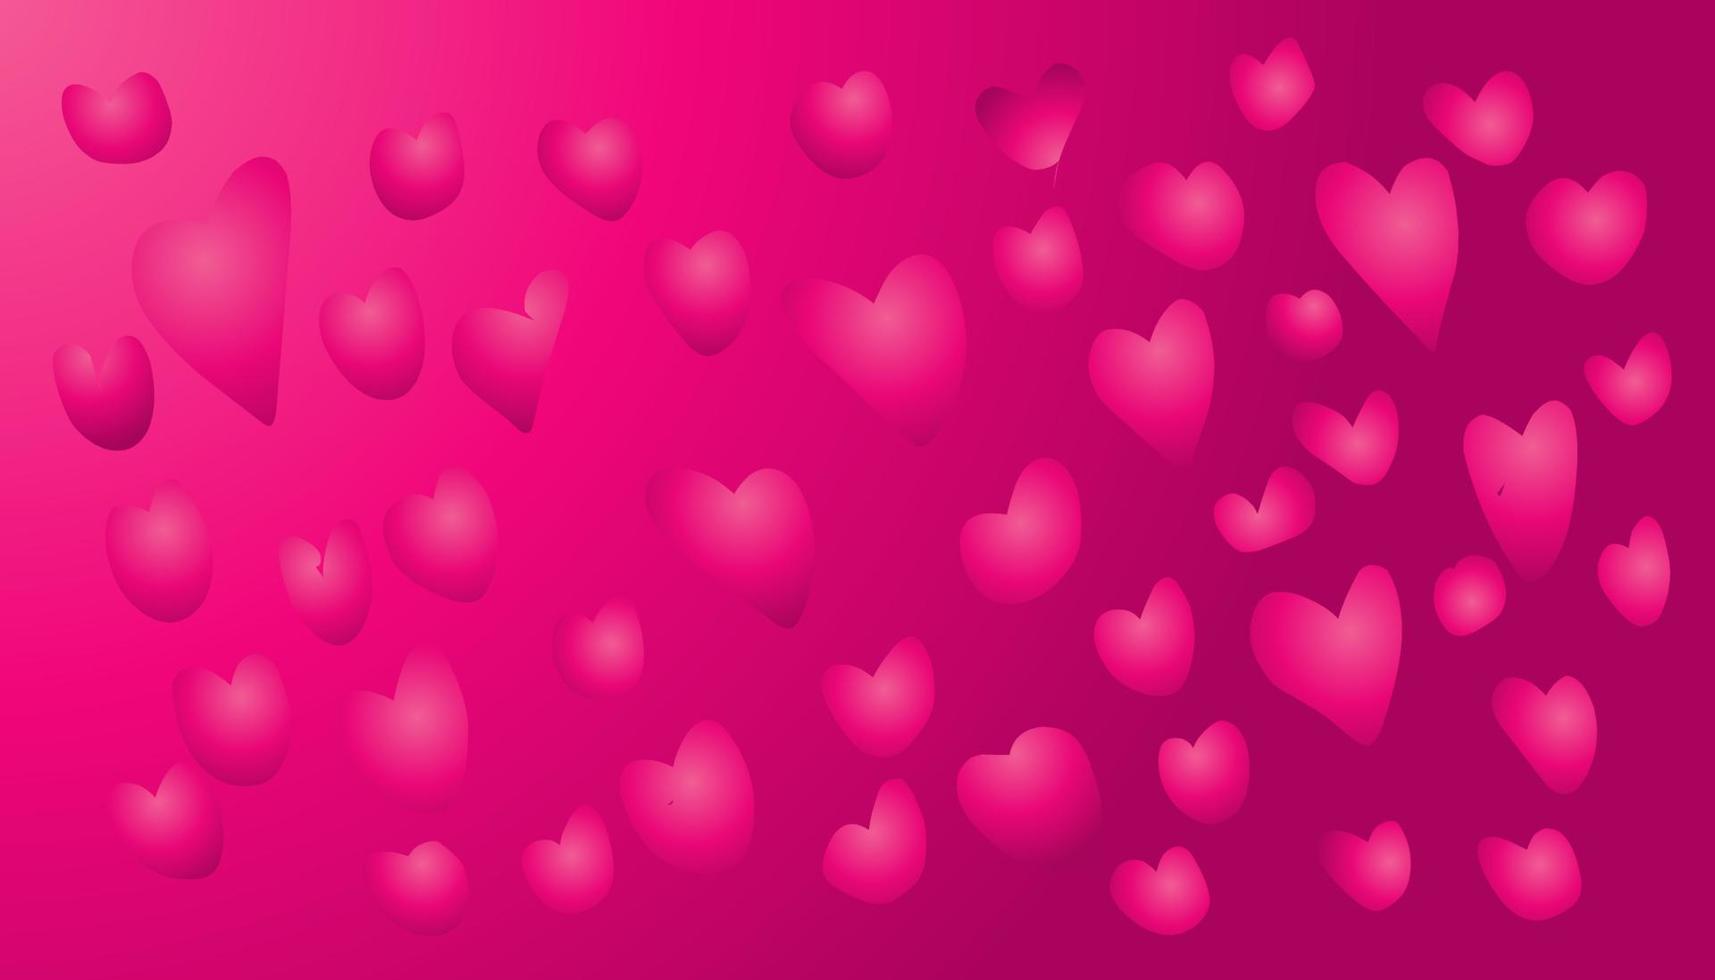 roze helling abstract illustratie achtergrond met veel van liefde afbeeldingen vector